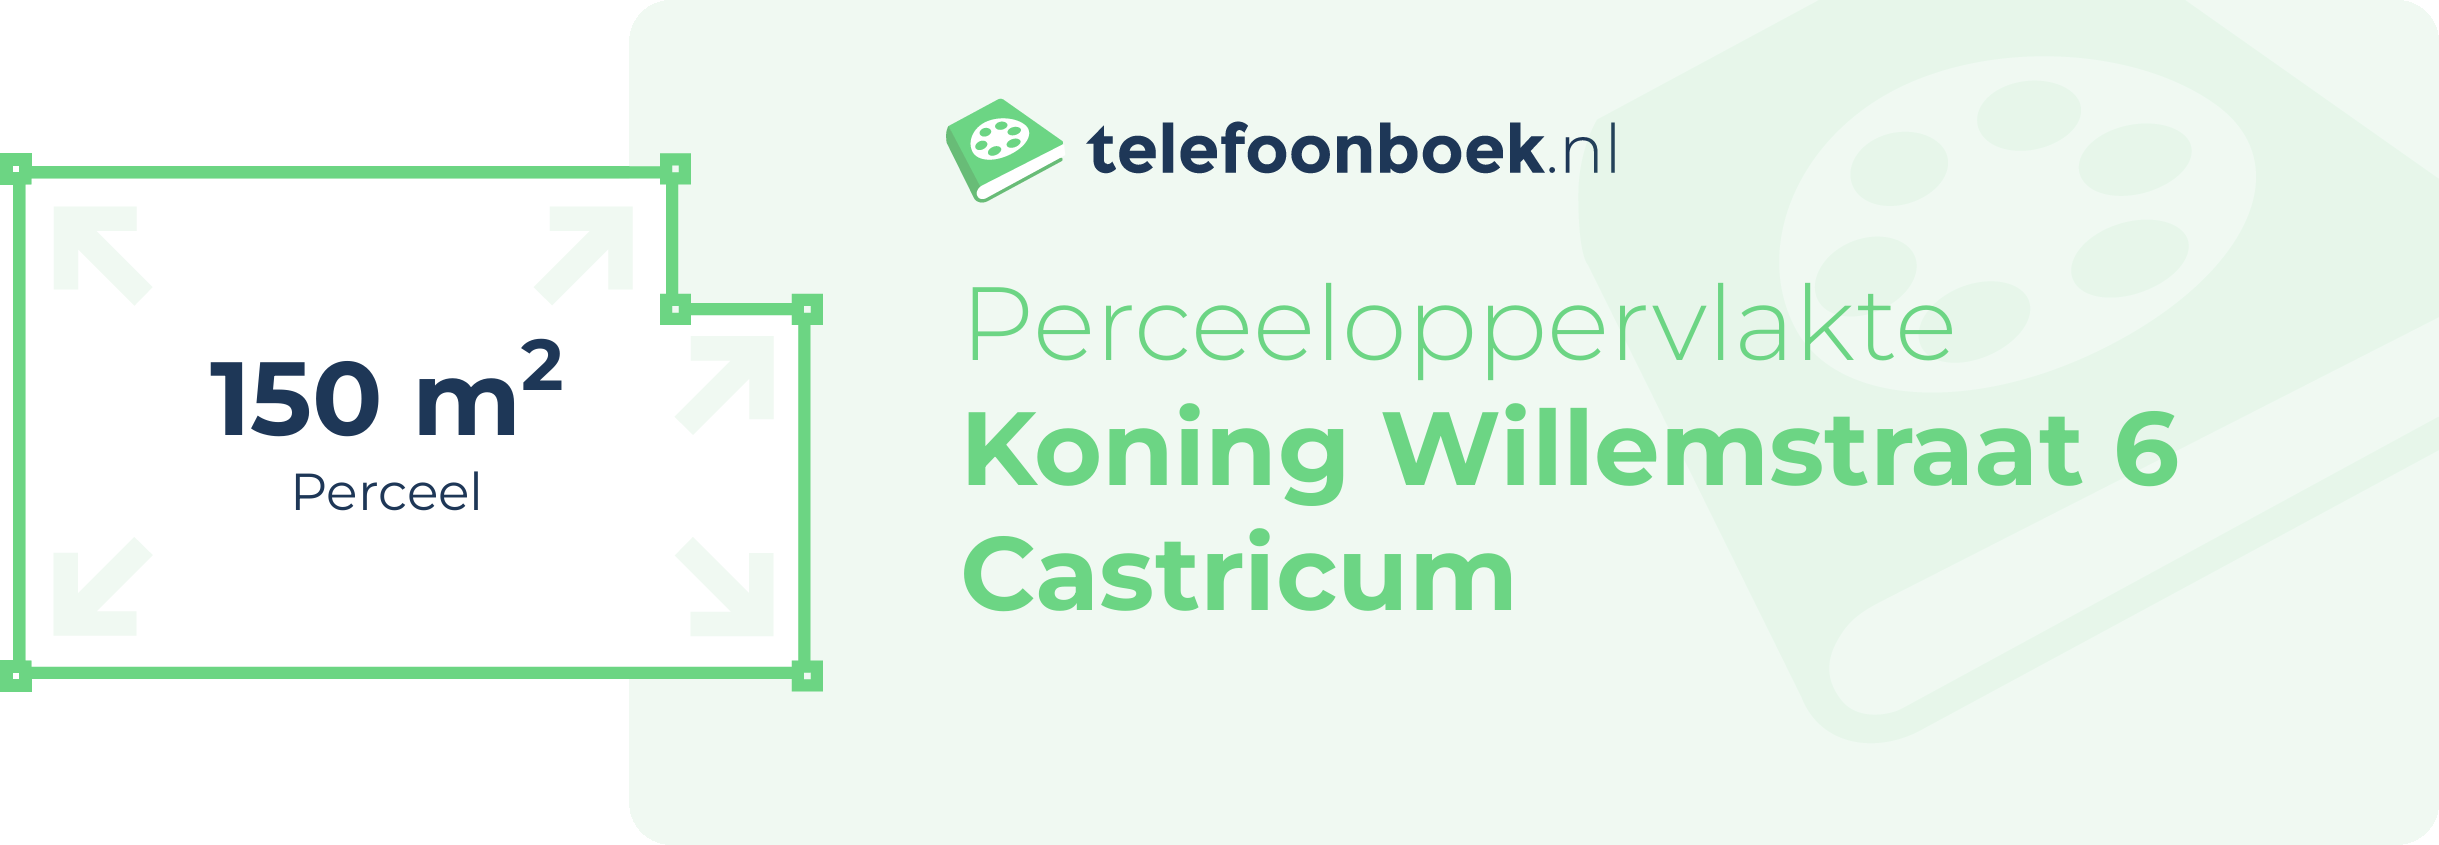 Perceeloppervlakte Koning Willemstraat 6 Castricum